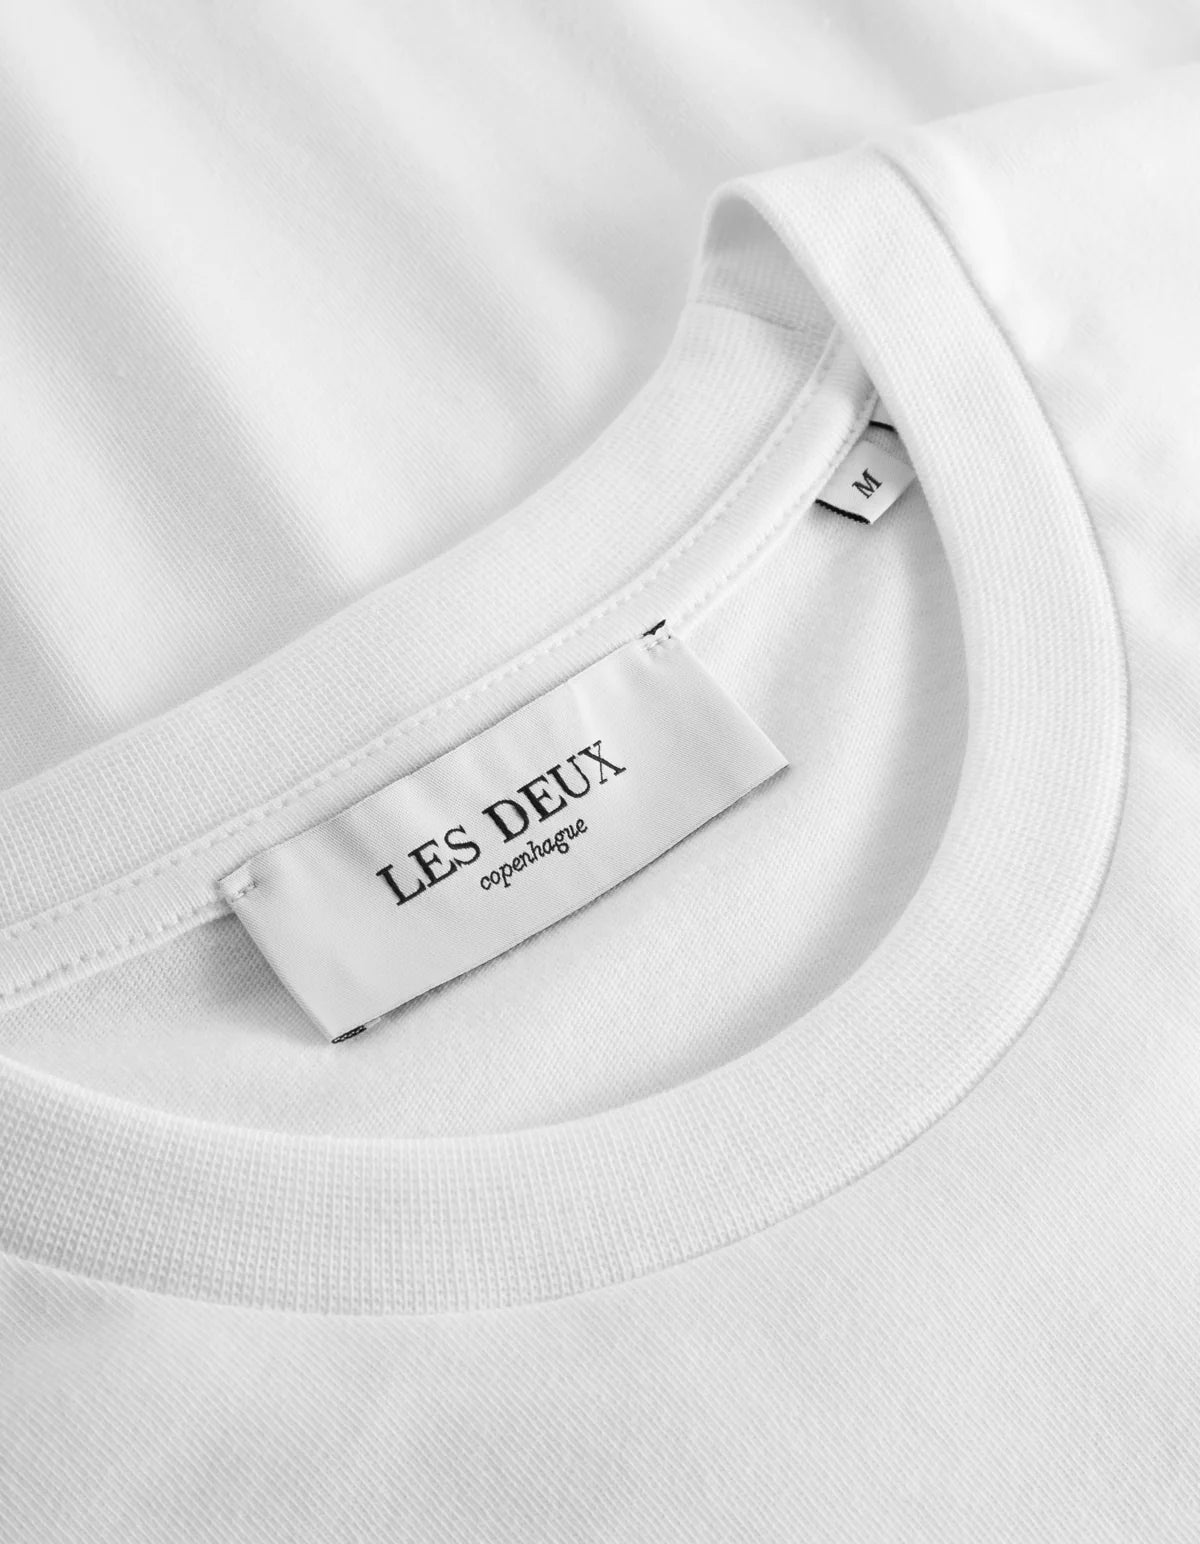 Globe T-Shirt White